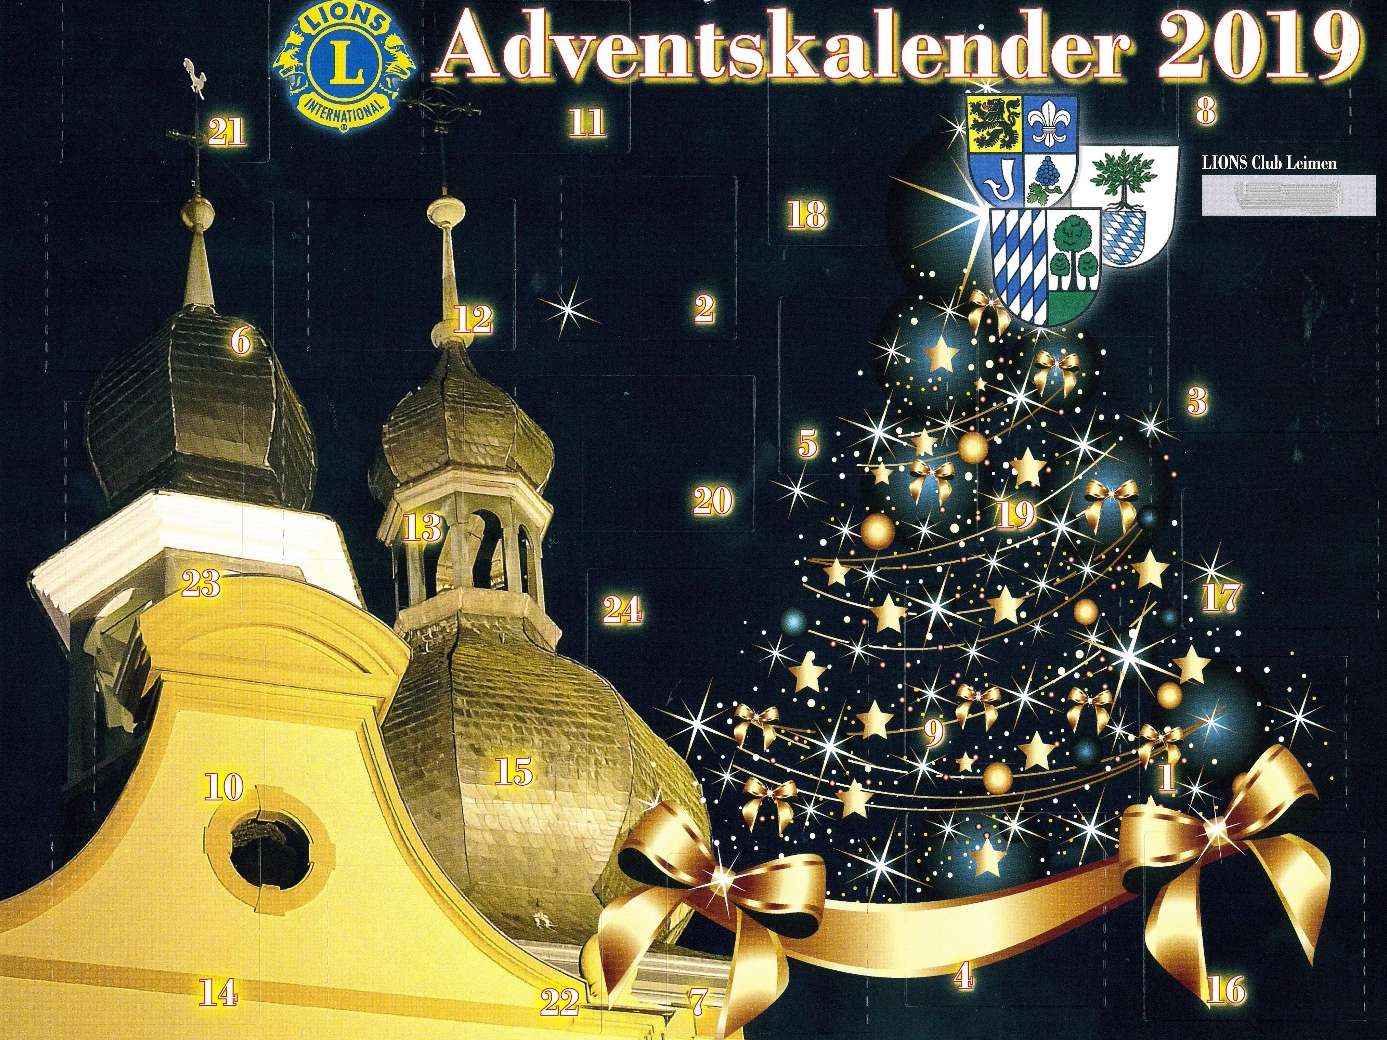  Der diesjährige Adventskalender des Lions Club Leimen hat als Motiv die St. Bartholomäus Kirche in Sandhausen 